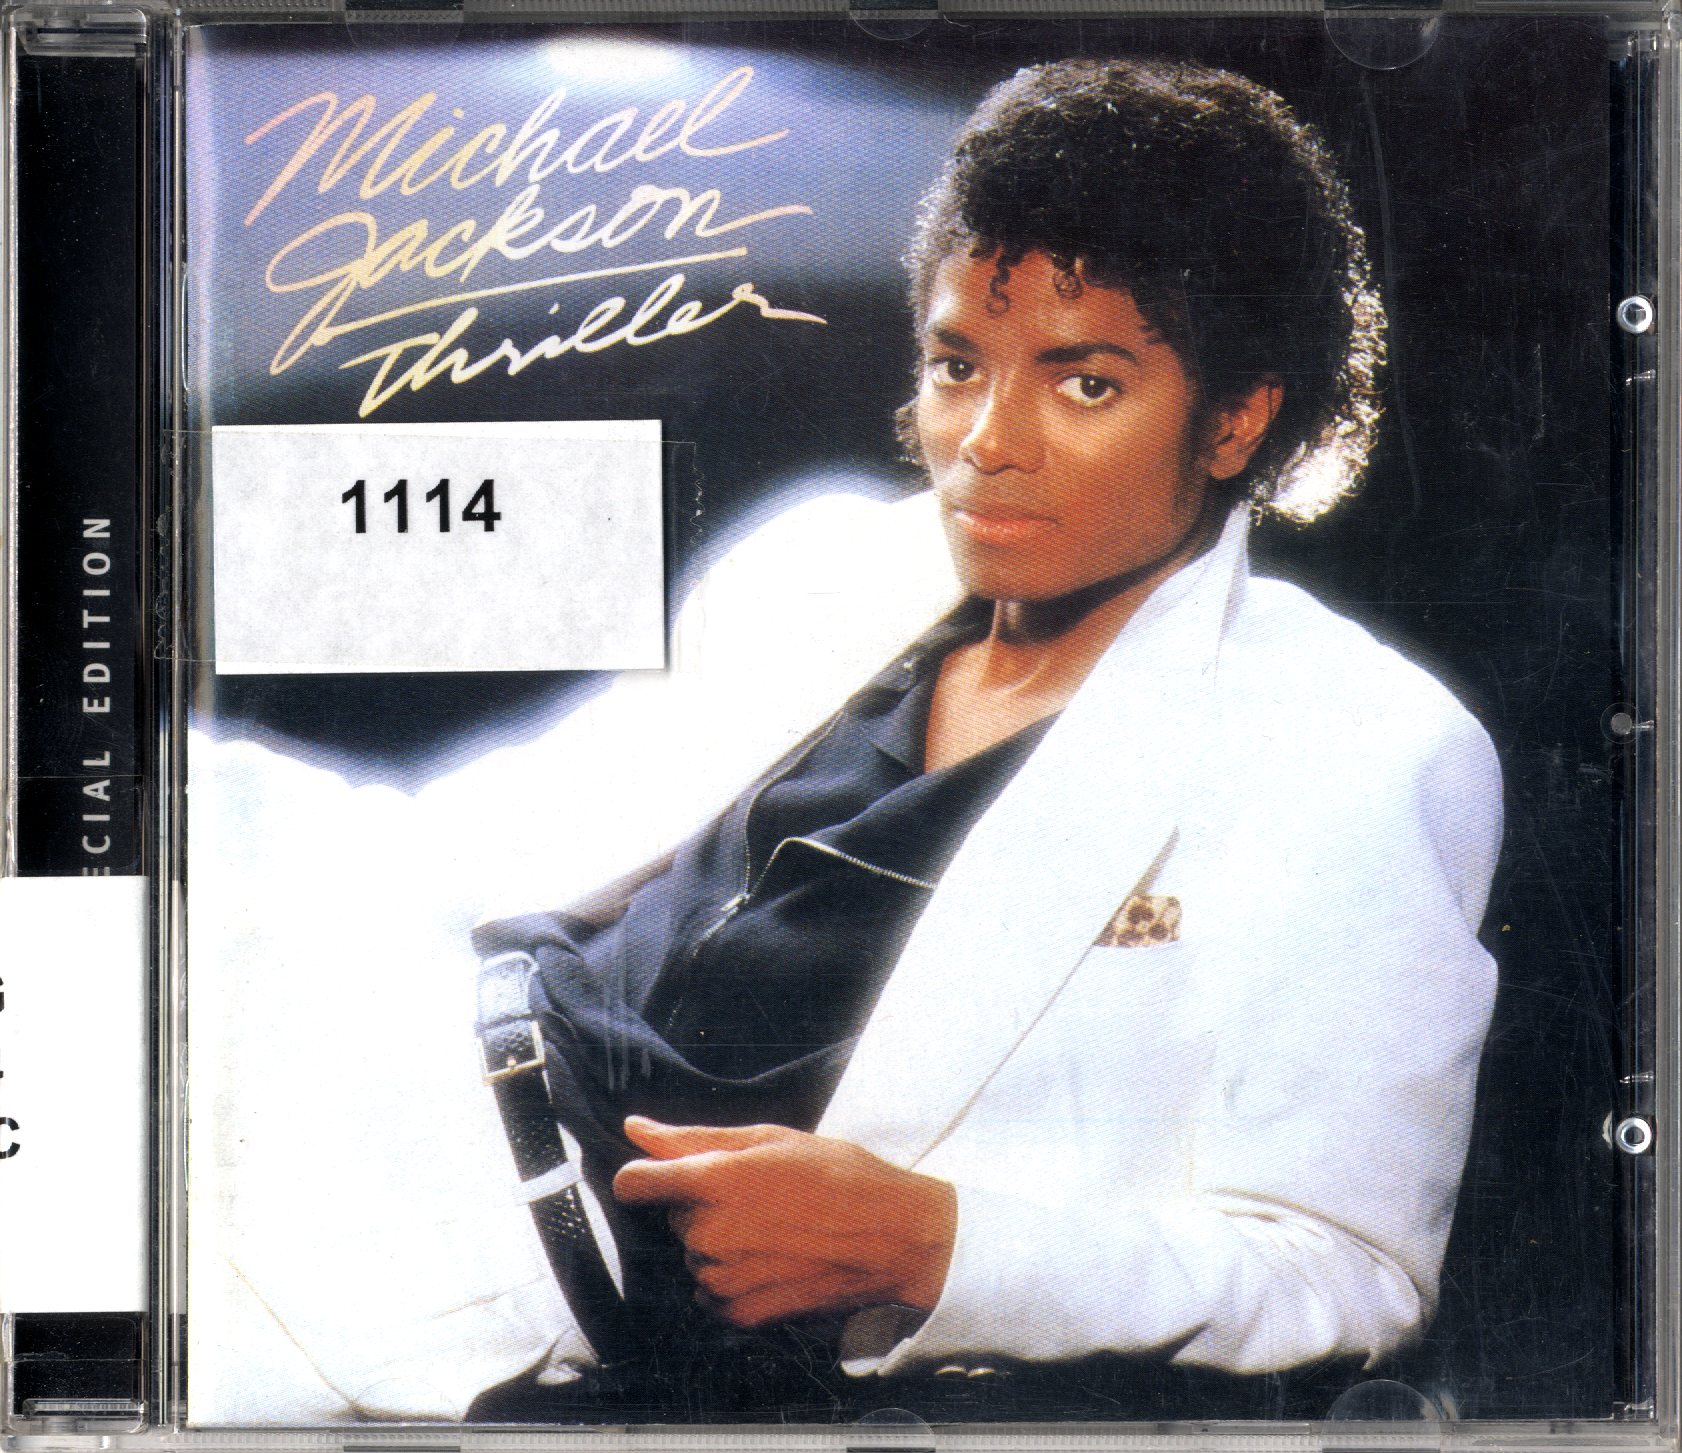 Carátula del disco compacto Thriller, con Michael Jackson, vestido de blanco, recostado sobre su codo